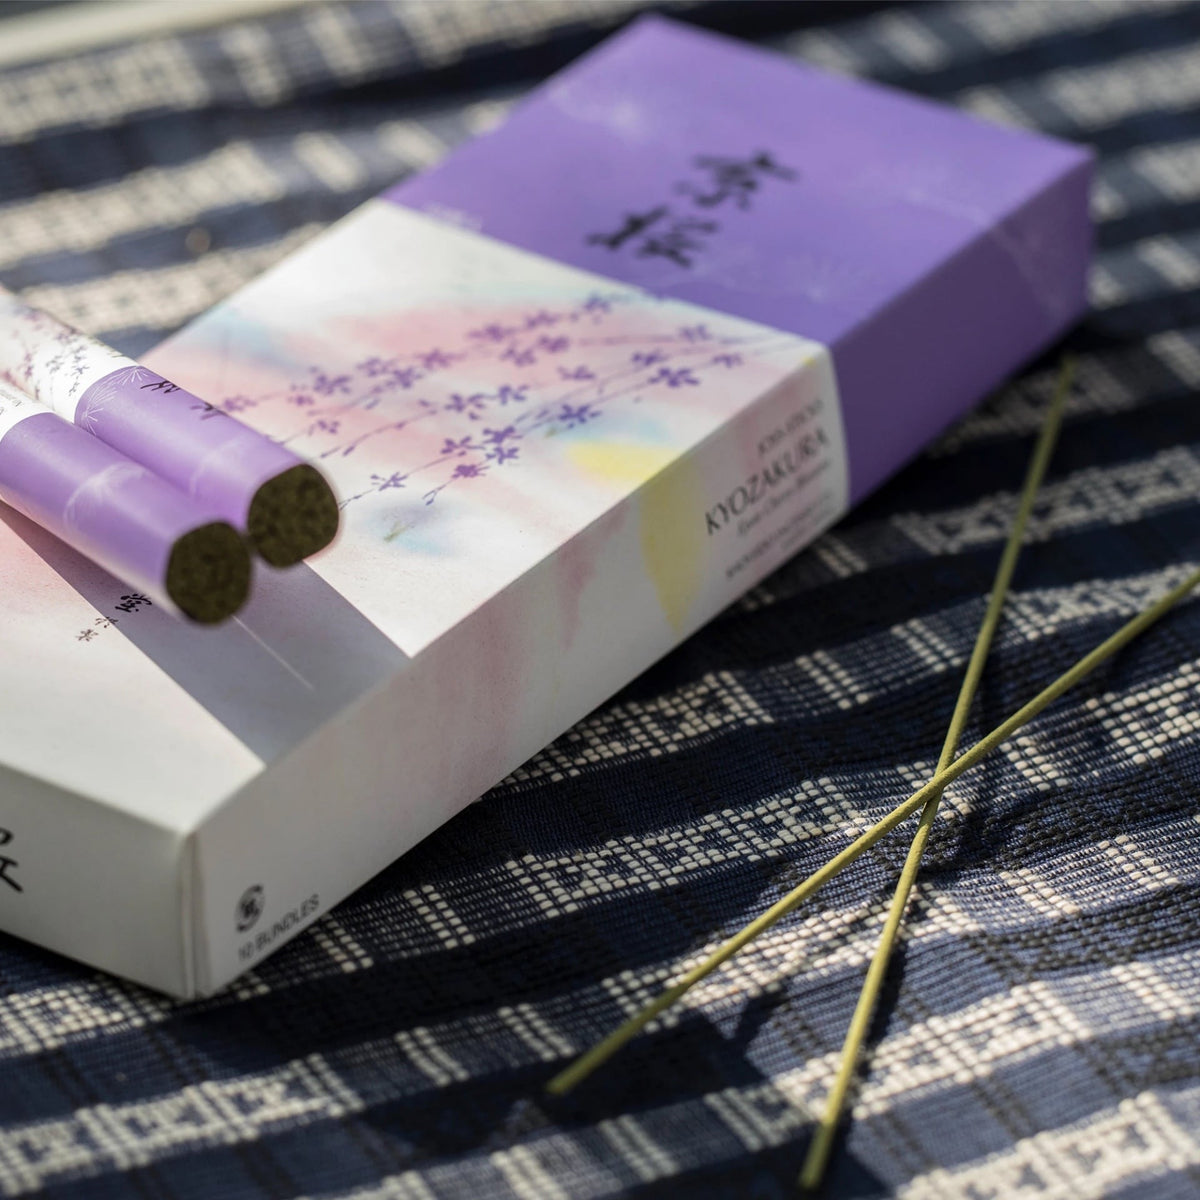 Senko Cherry Blossom – Kyozakura incense sticks on a table next to a box.